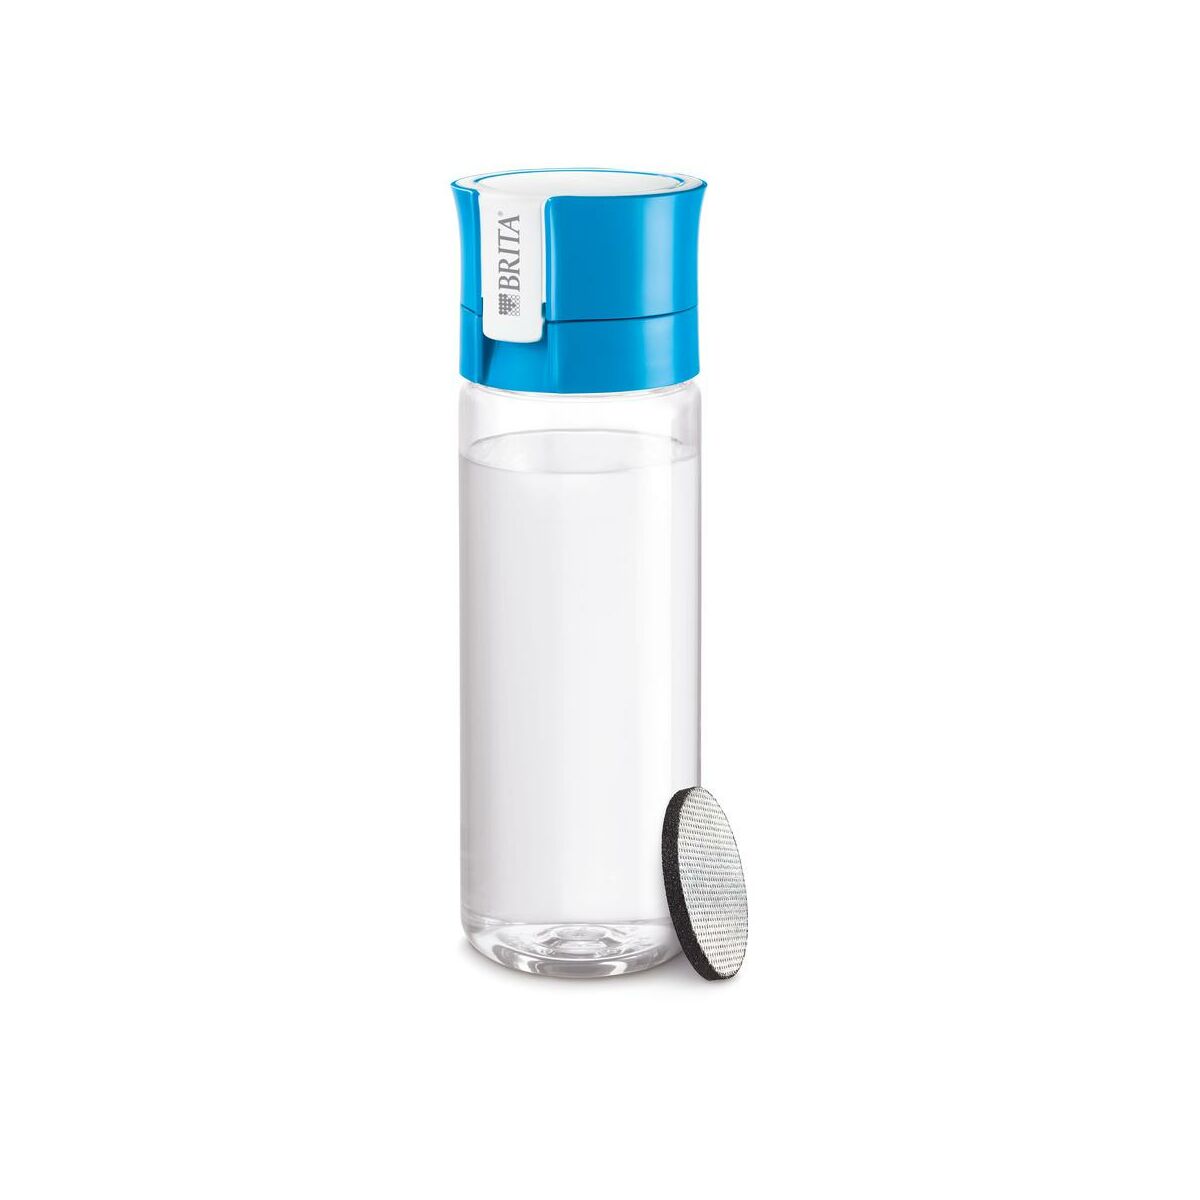 Butelka filtrująca Fill&Go Vital 0.6 l niebieska Brita